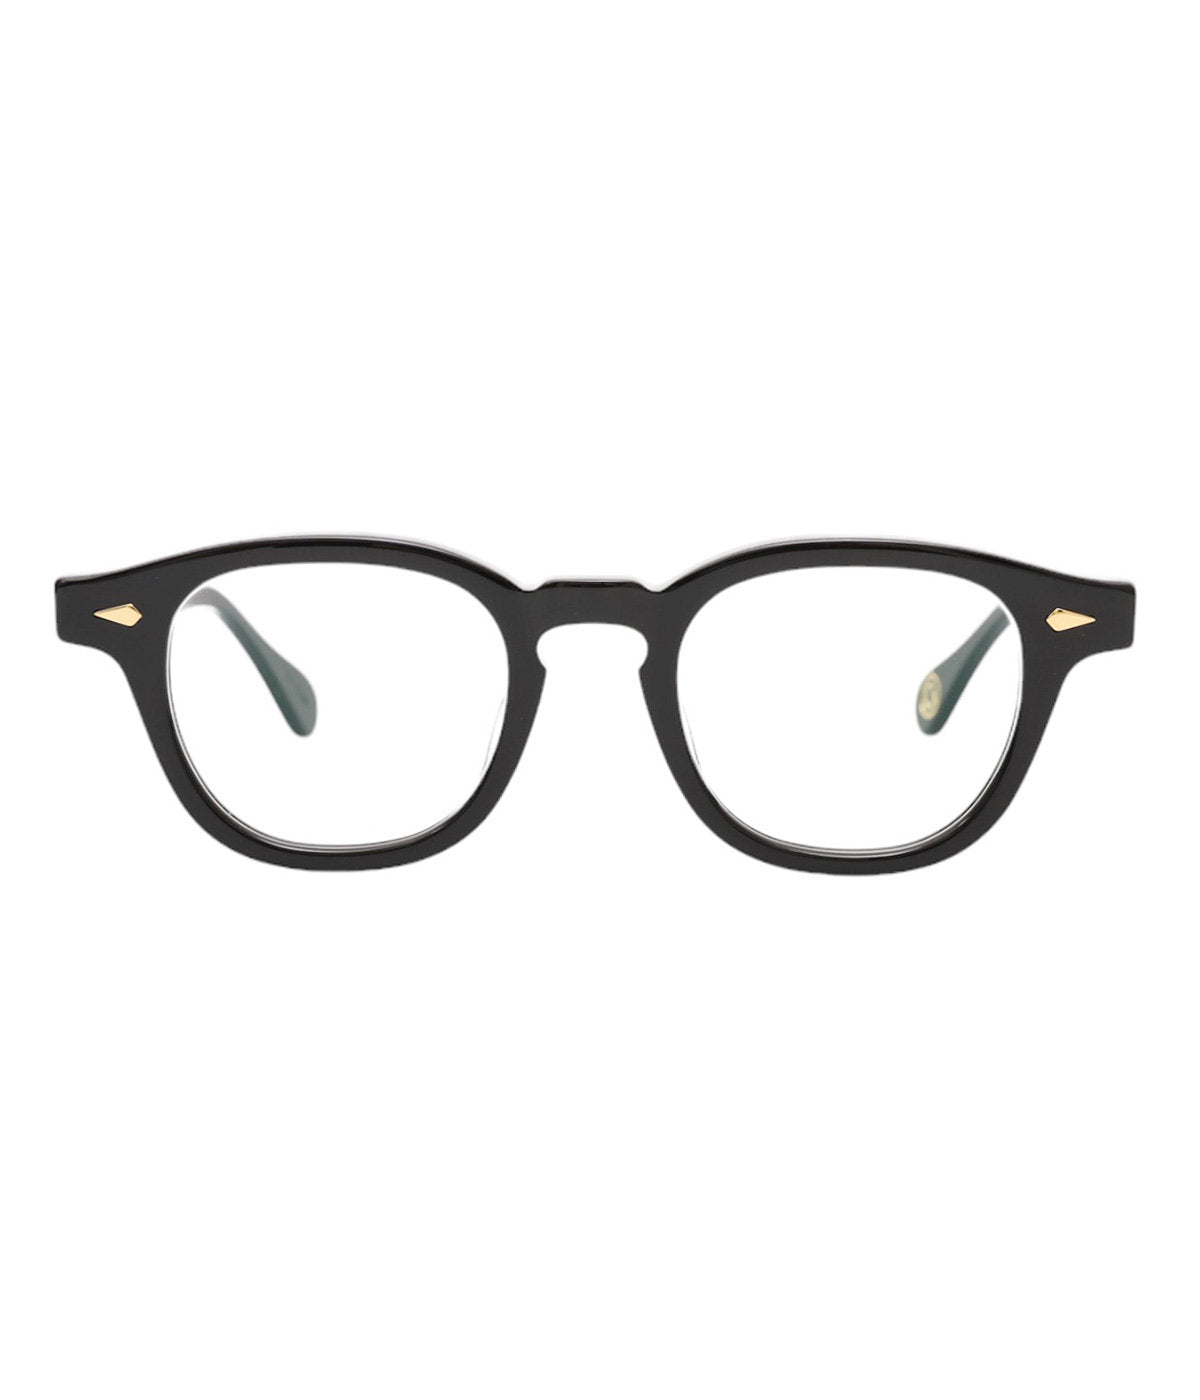 JULIUS TART OPTICAL AR Gold Edition Eyeglass Frame Black